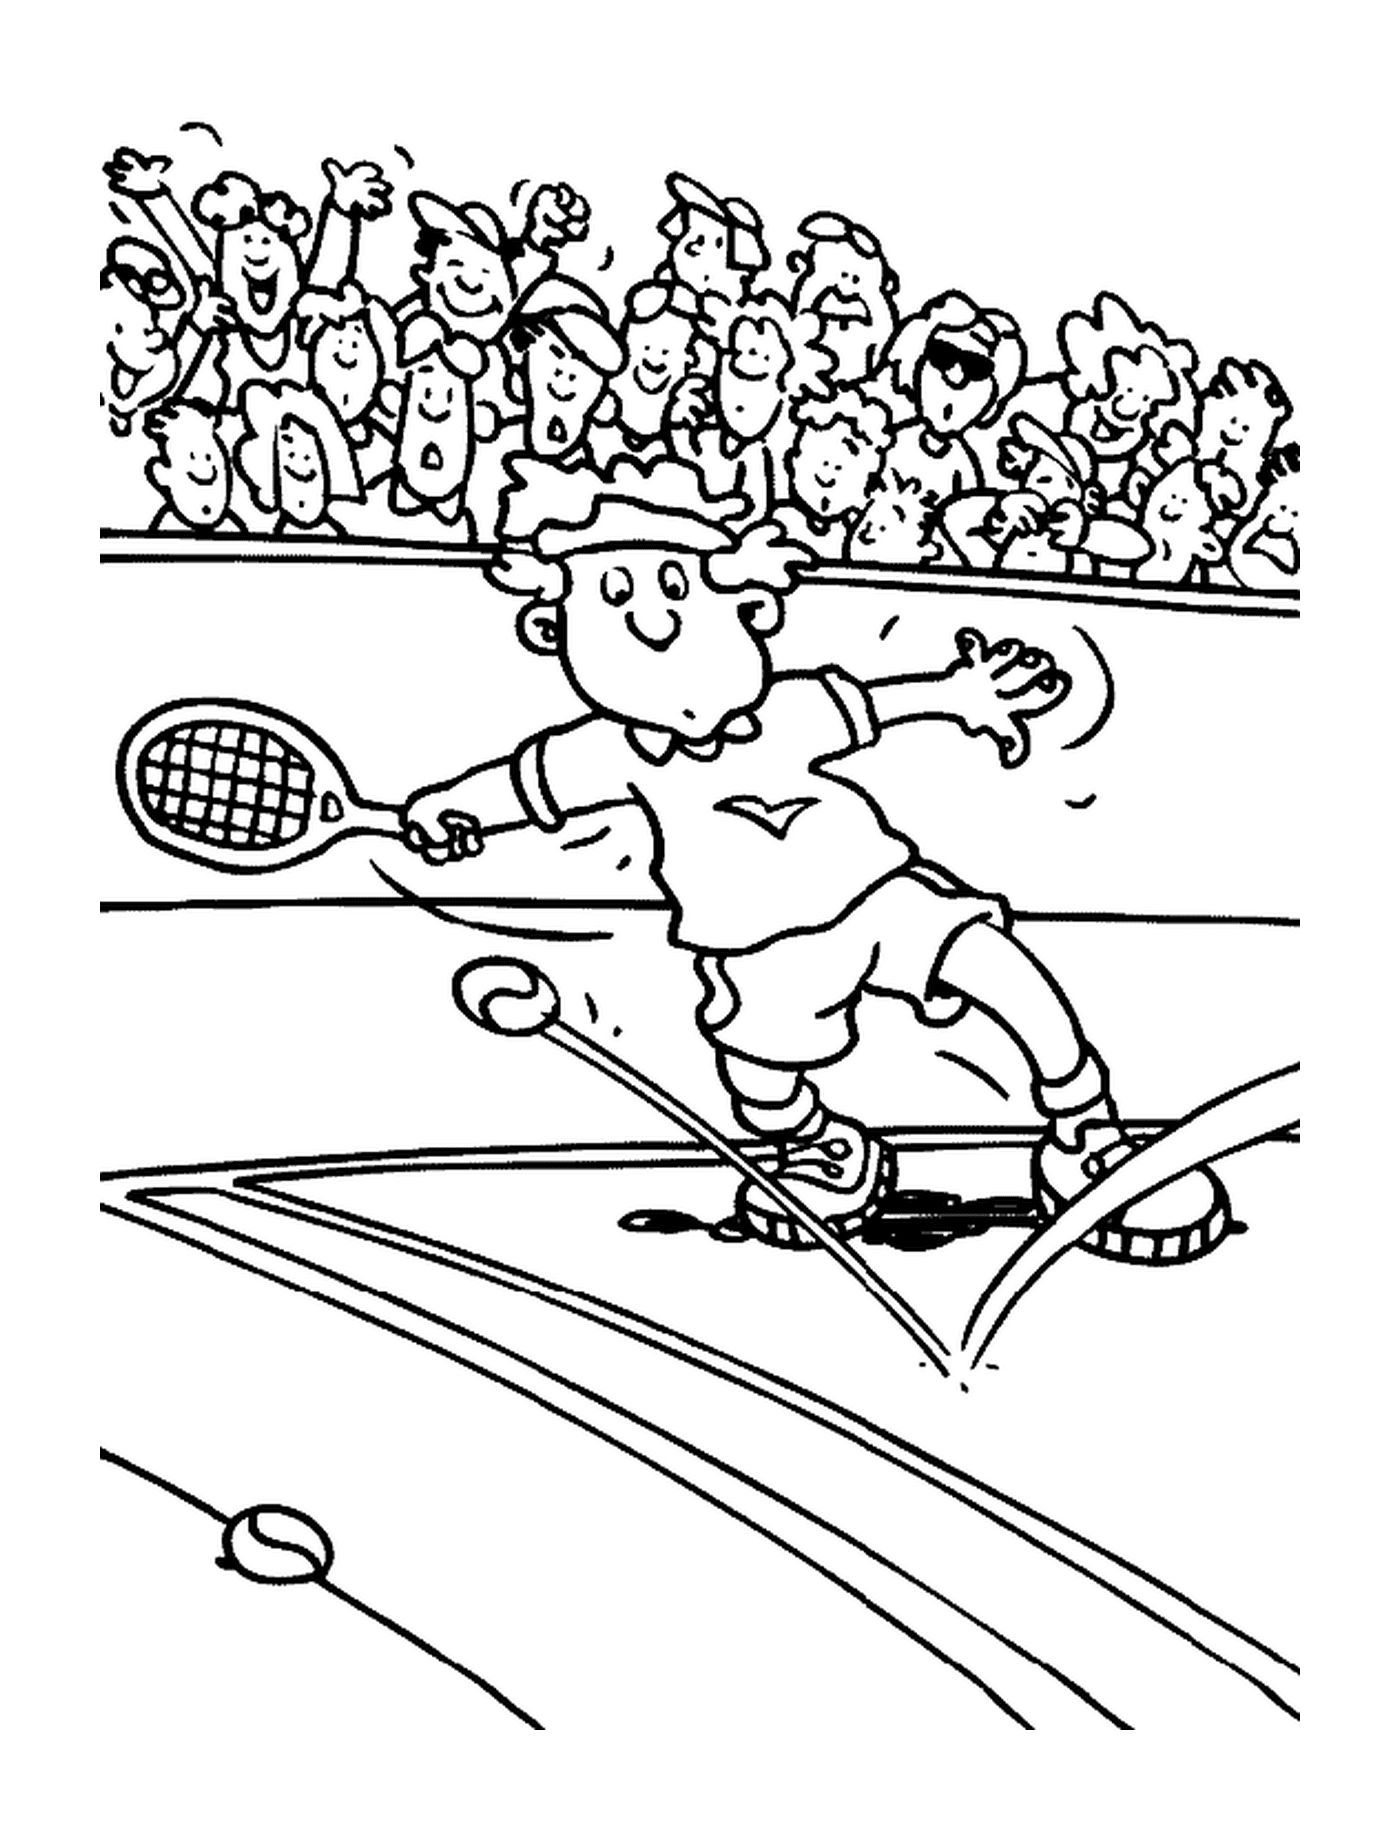  Ein Mann in Tennis-Action 